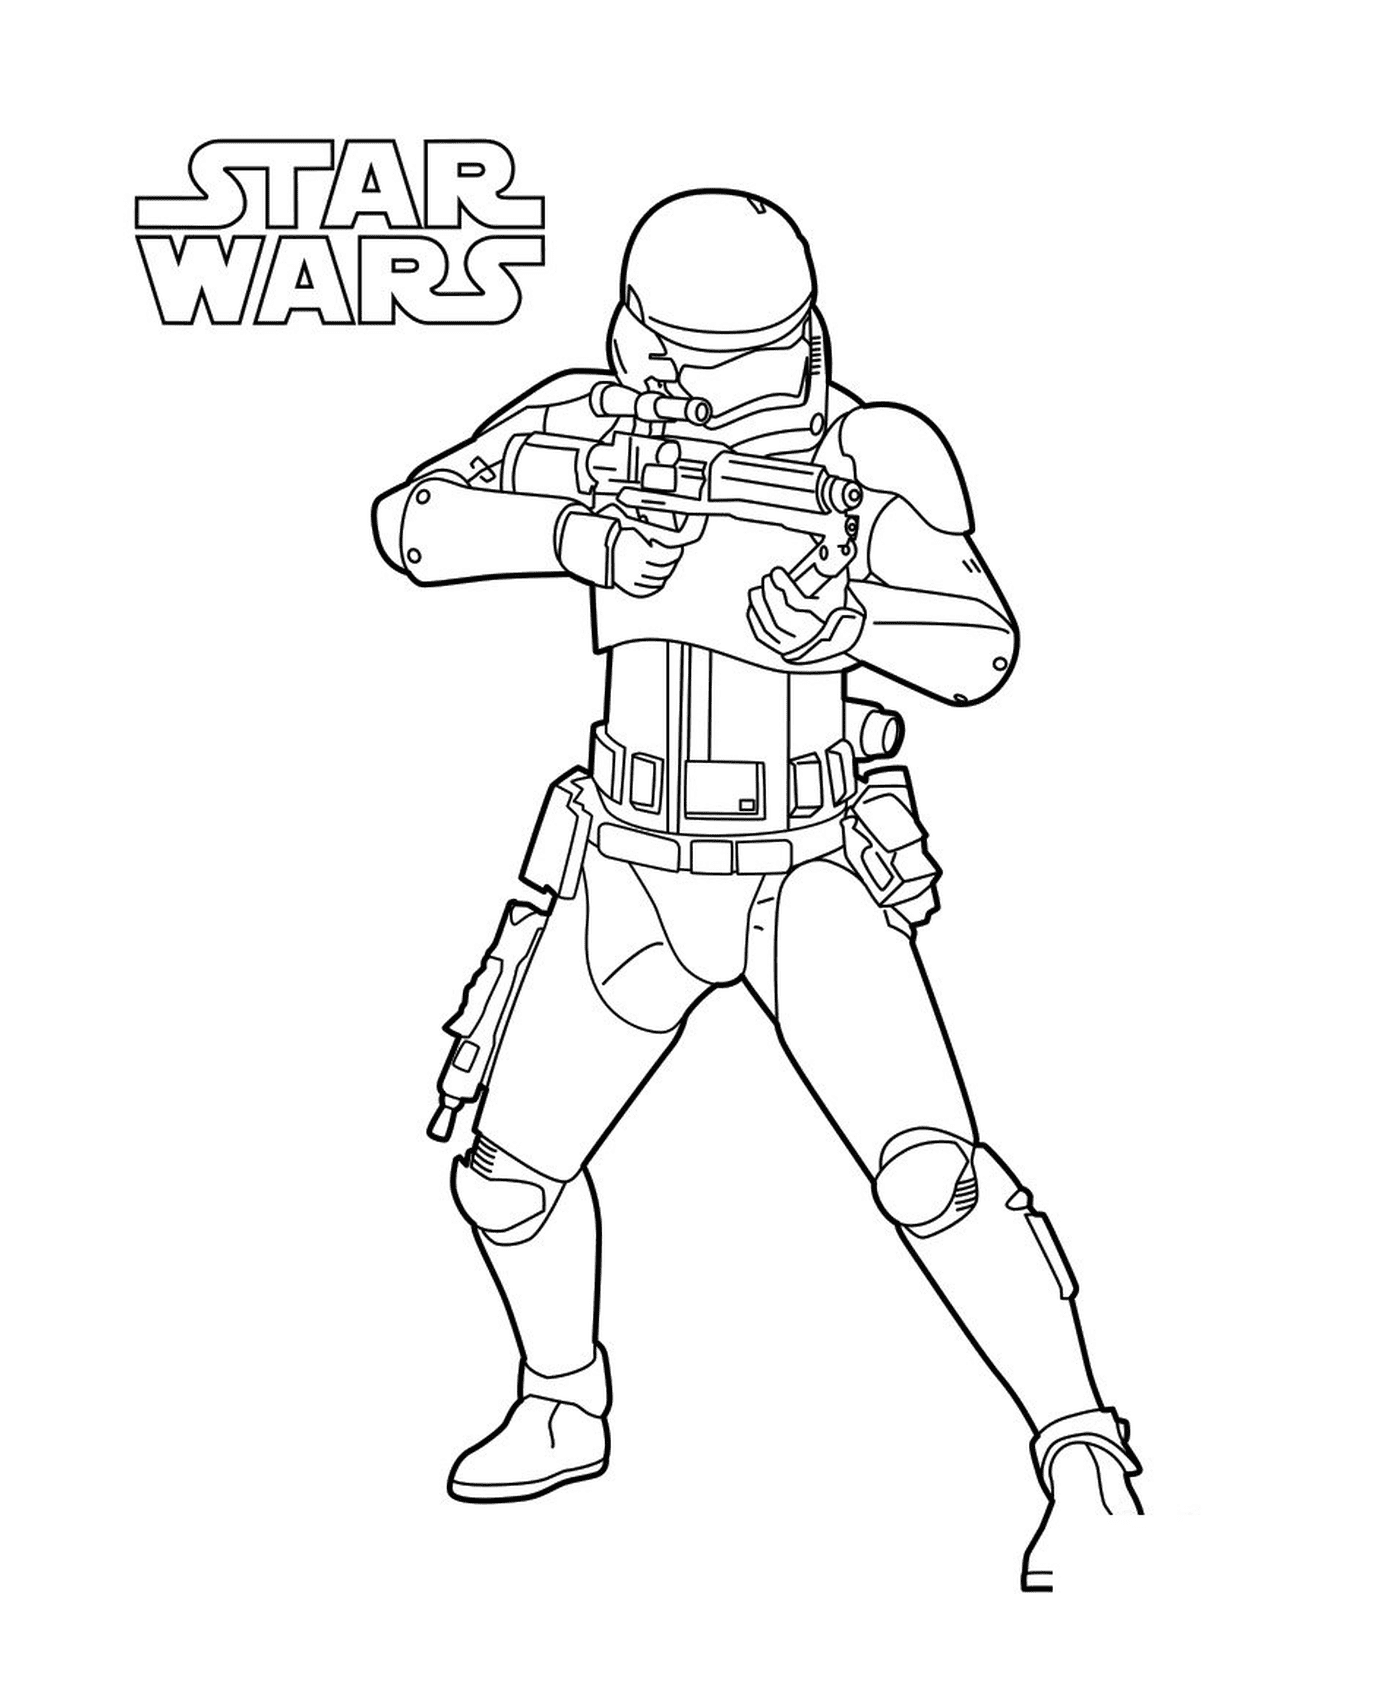  Stormtrooper com uma arma 